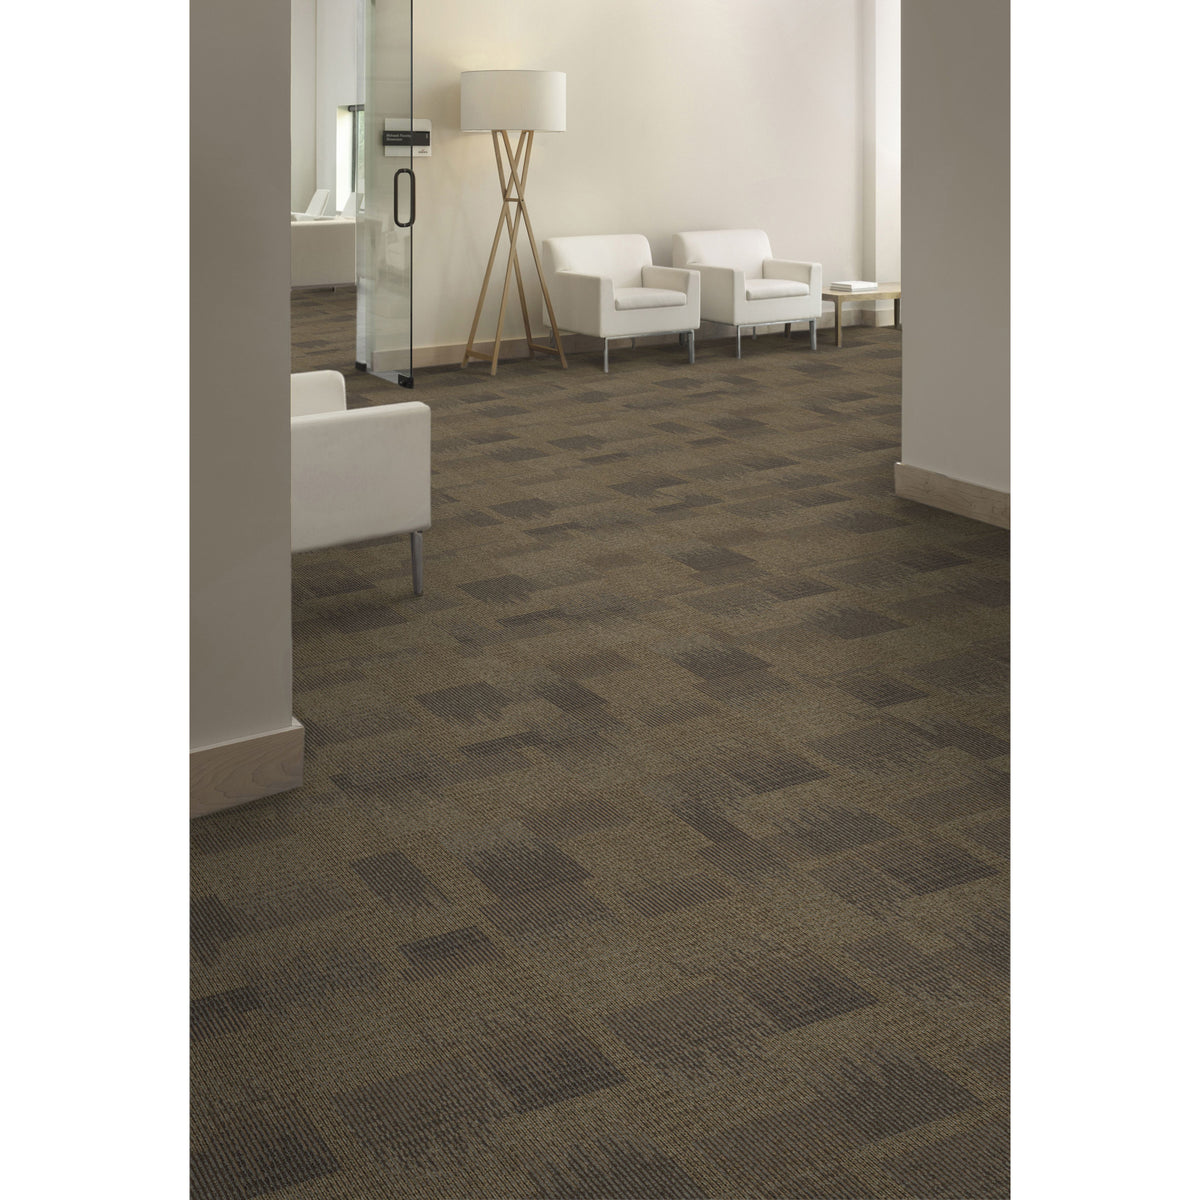 Aladdin Commercial - Commerce - Onward Bound - Carpet Tile - Lasting Impression - Room Scene